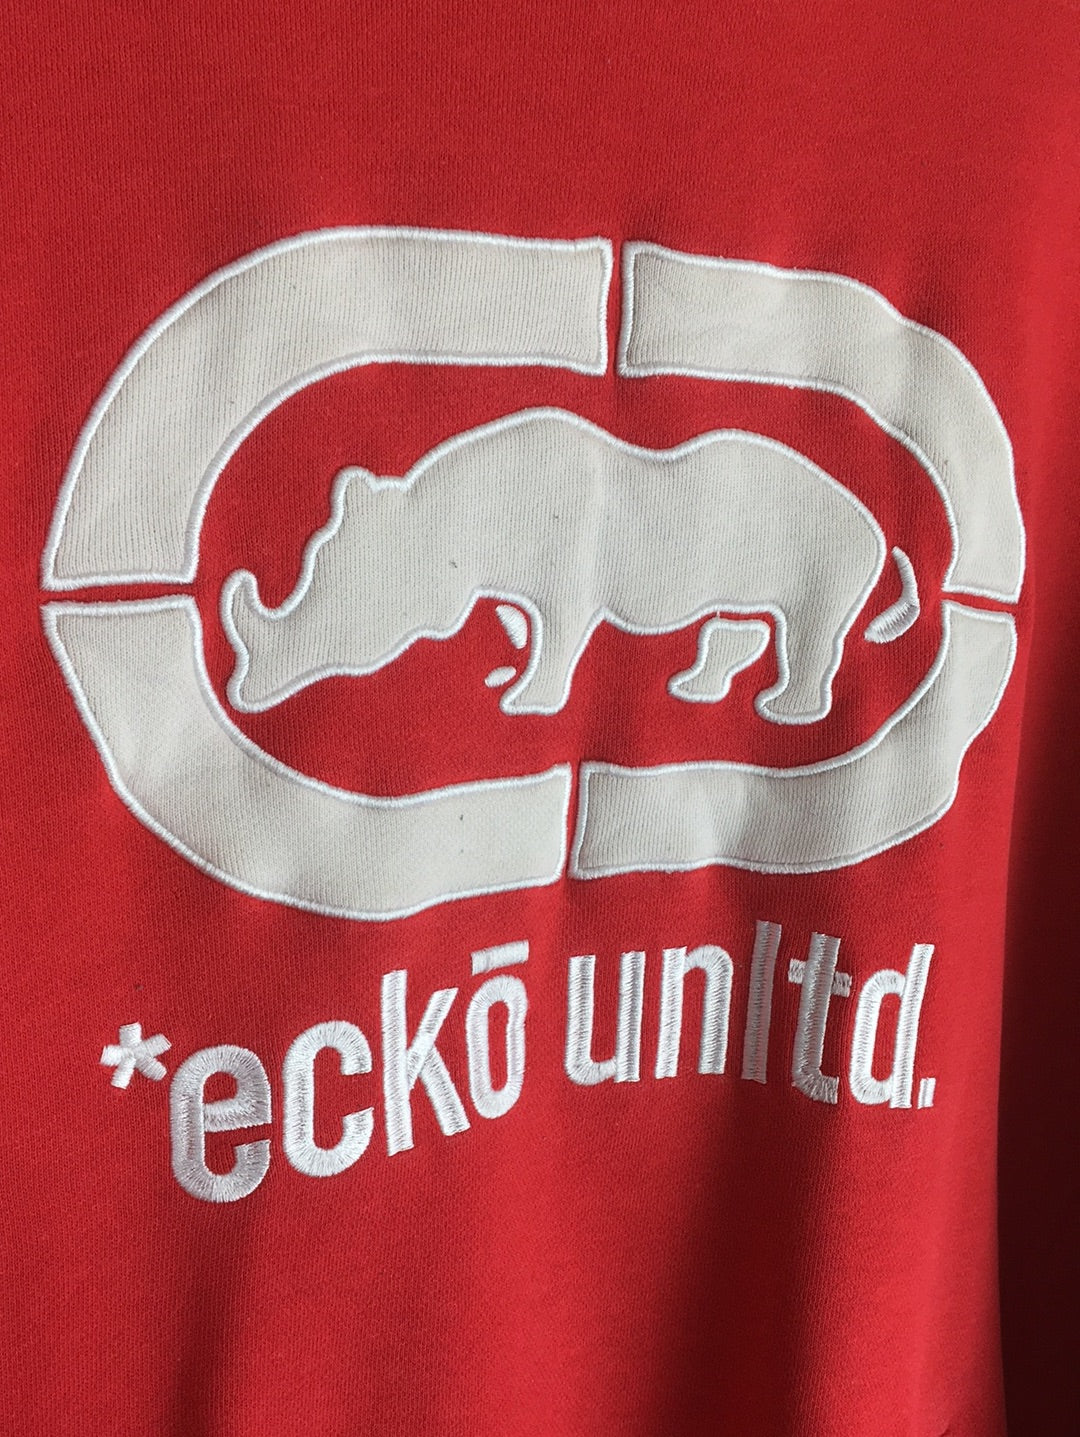 Eckō unltd. Sweater (M)